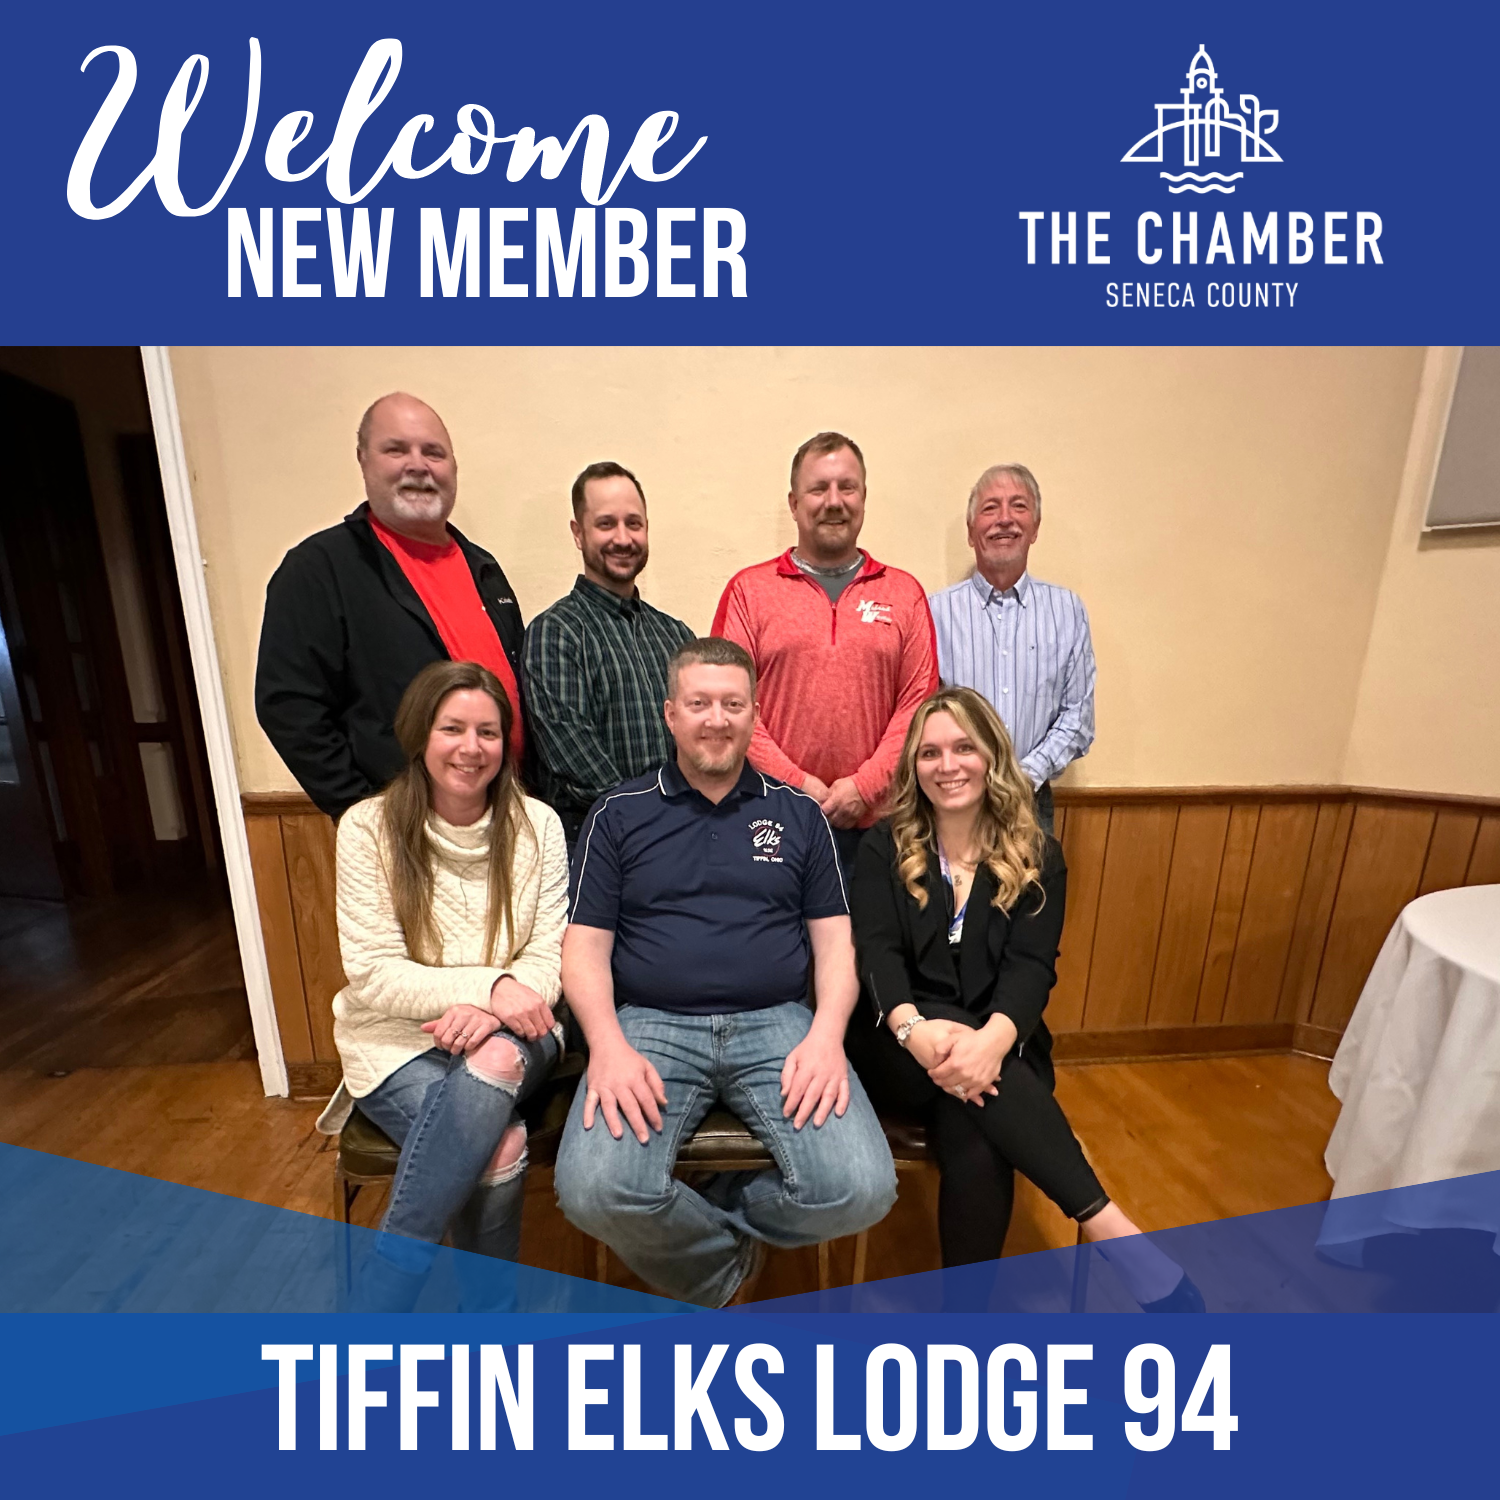 New Member: Tiffin Elks Lodge 094